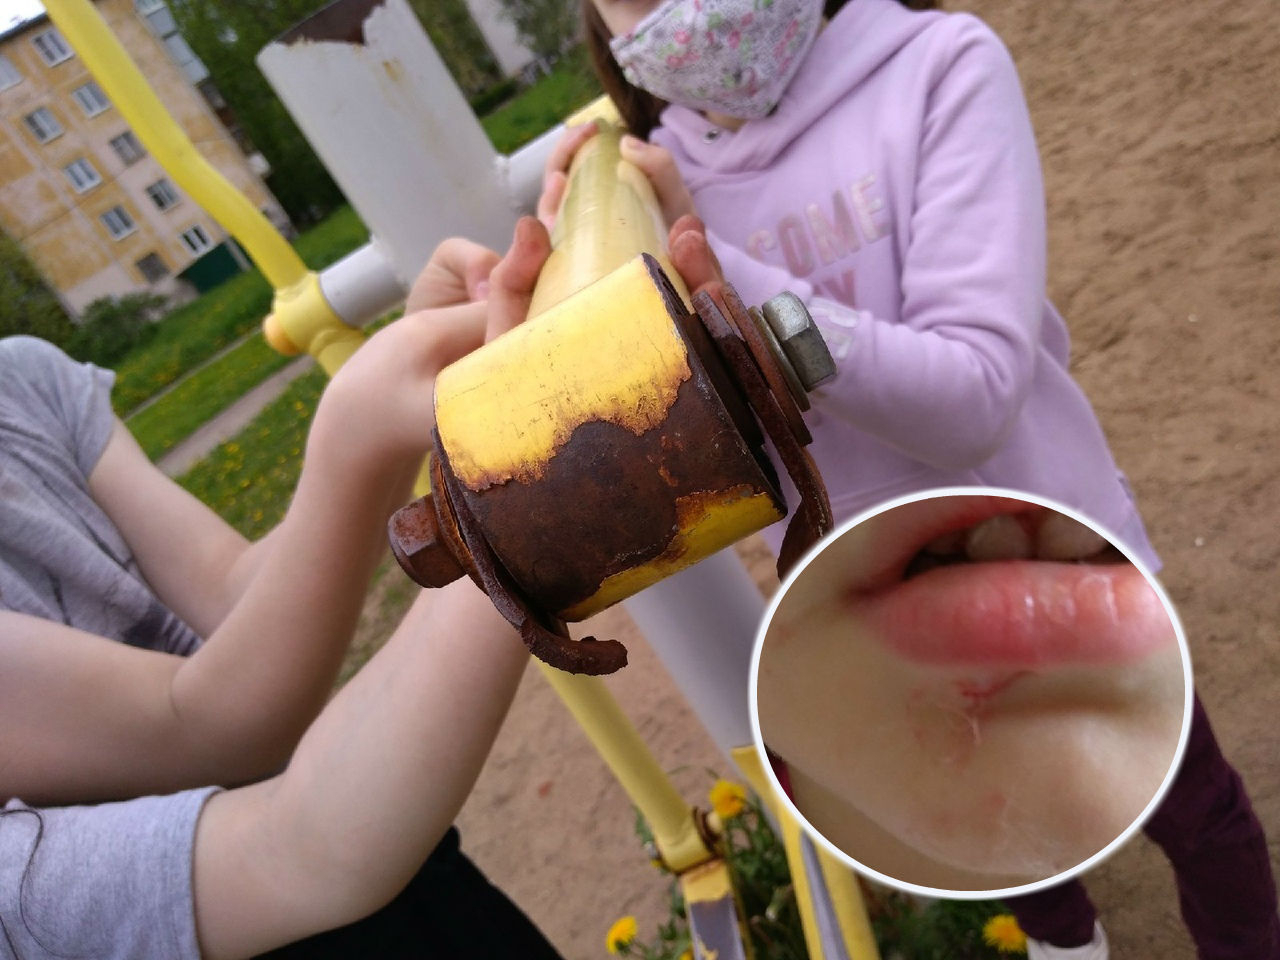 "Подбородок проткнуло насквозь": малышка травмировалась на детской площадке в Ярославле